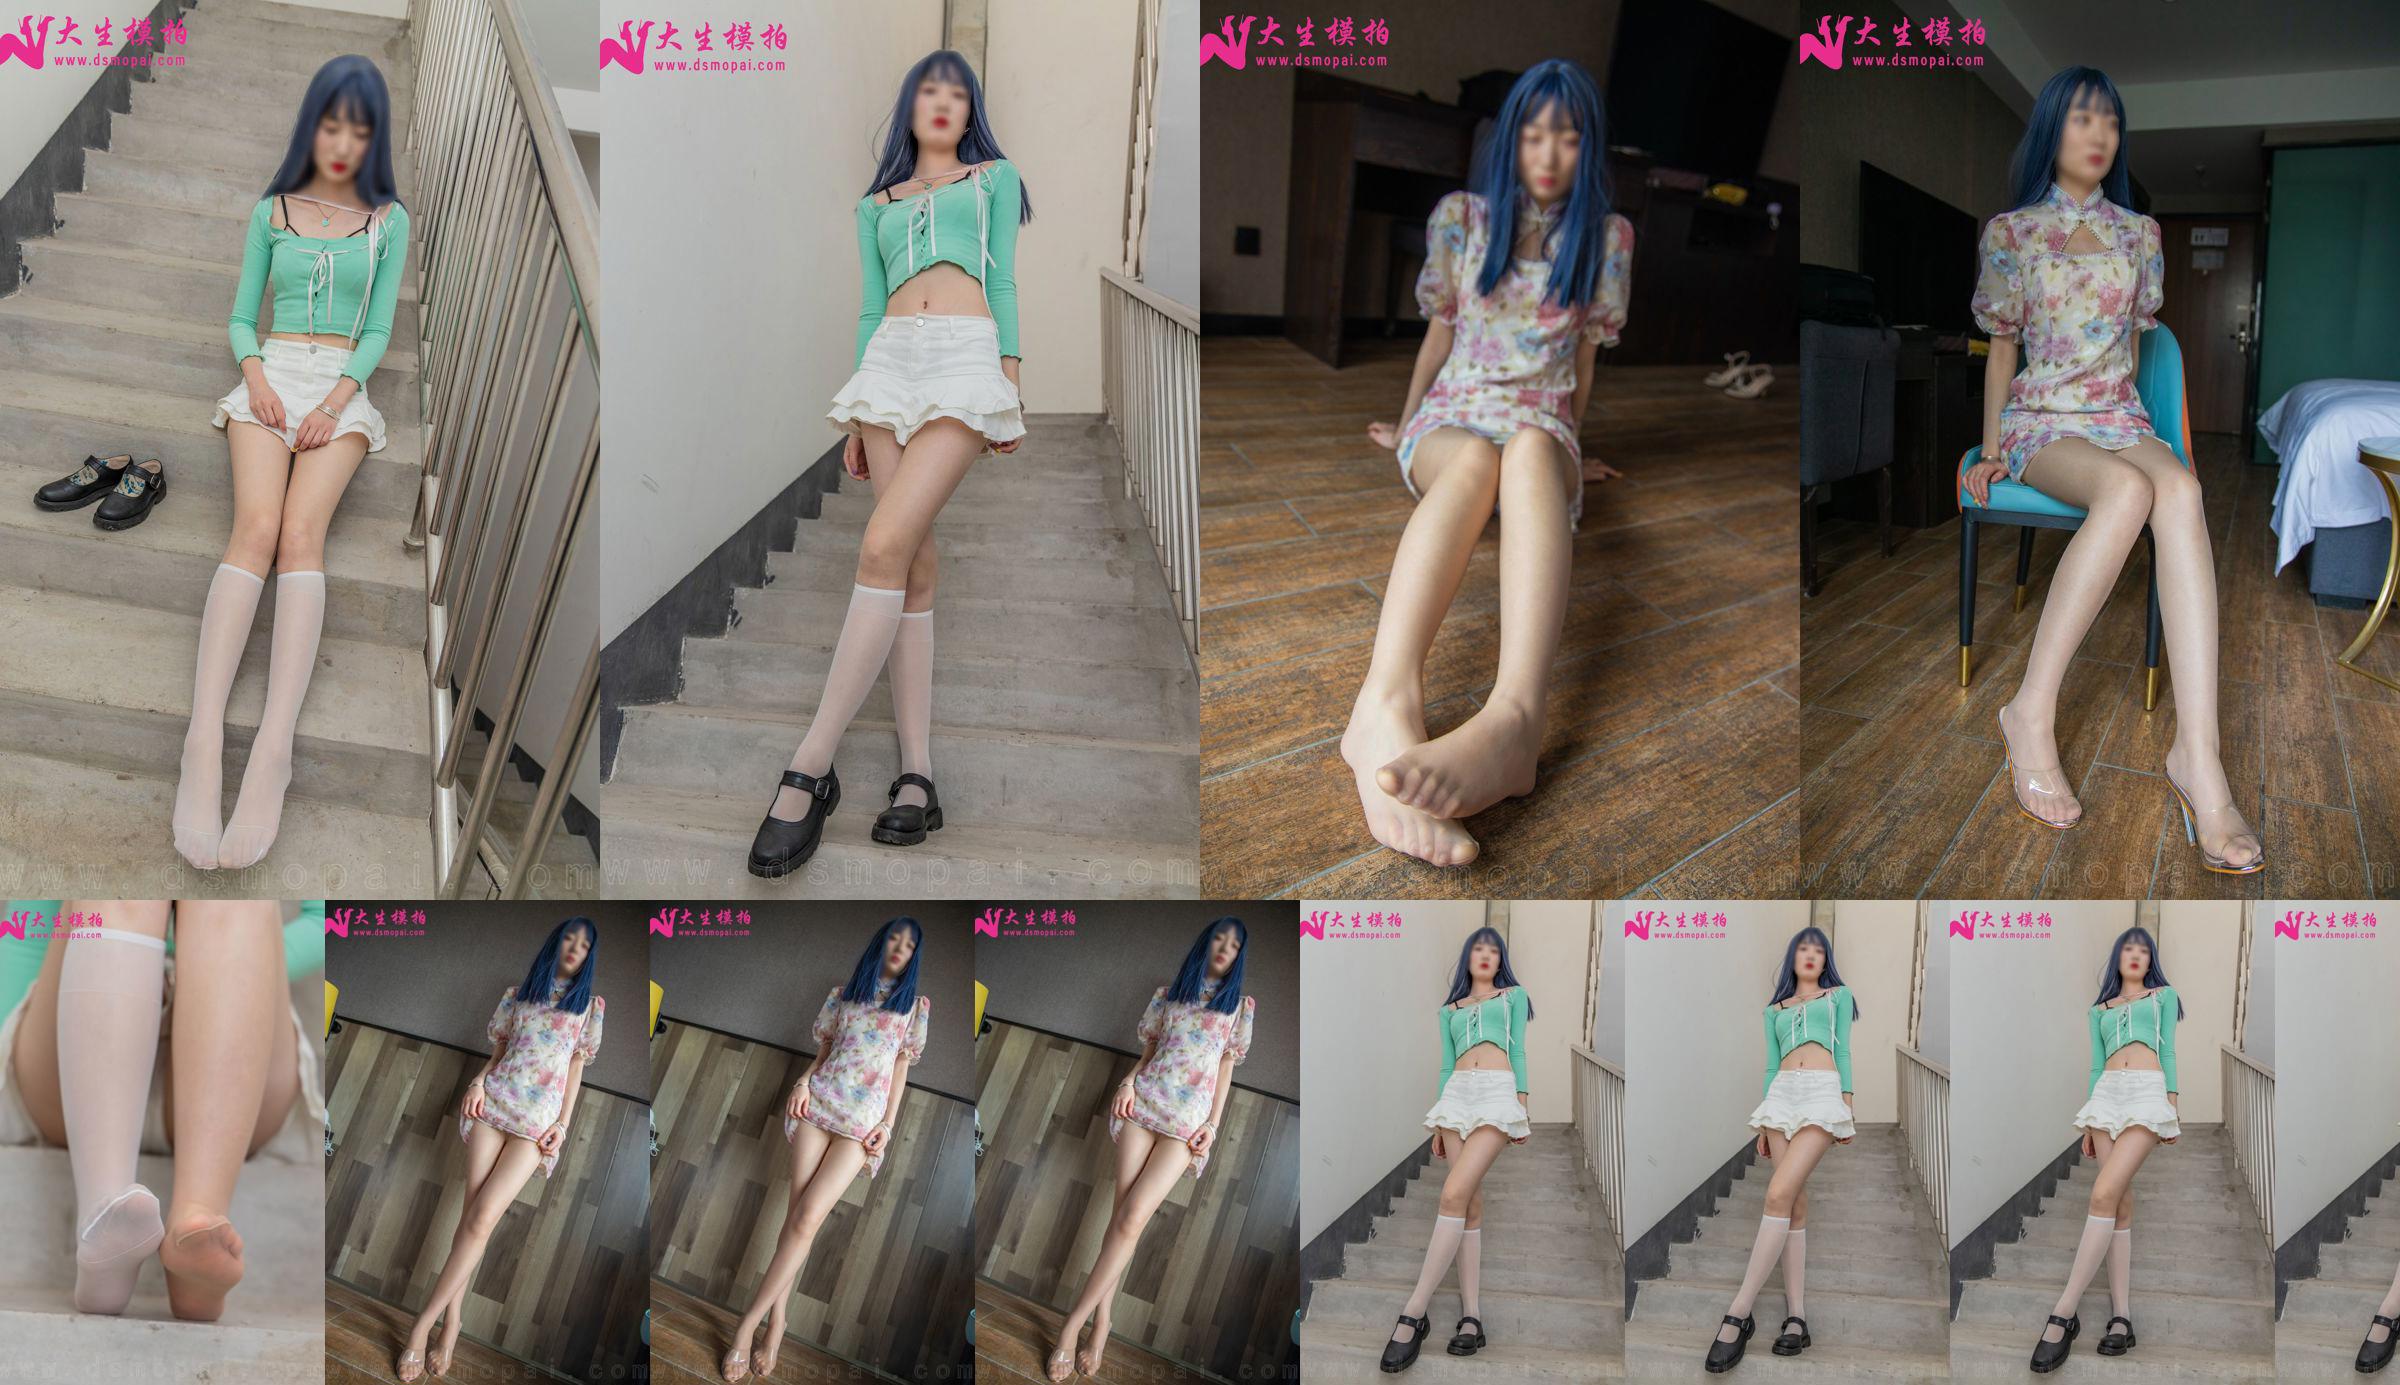 [Съемка модели Dasheng] NO.231 Lili Perfect Long Legs Photo Set No.aa7d9a Страница 1